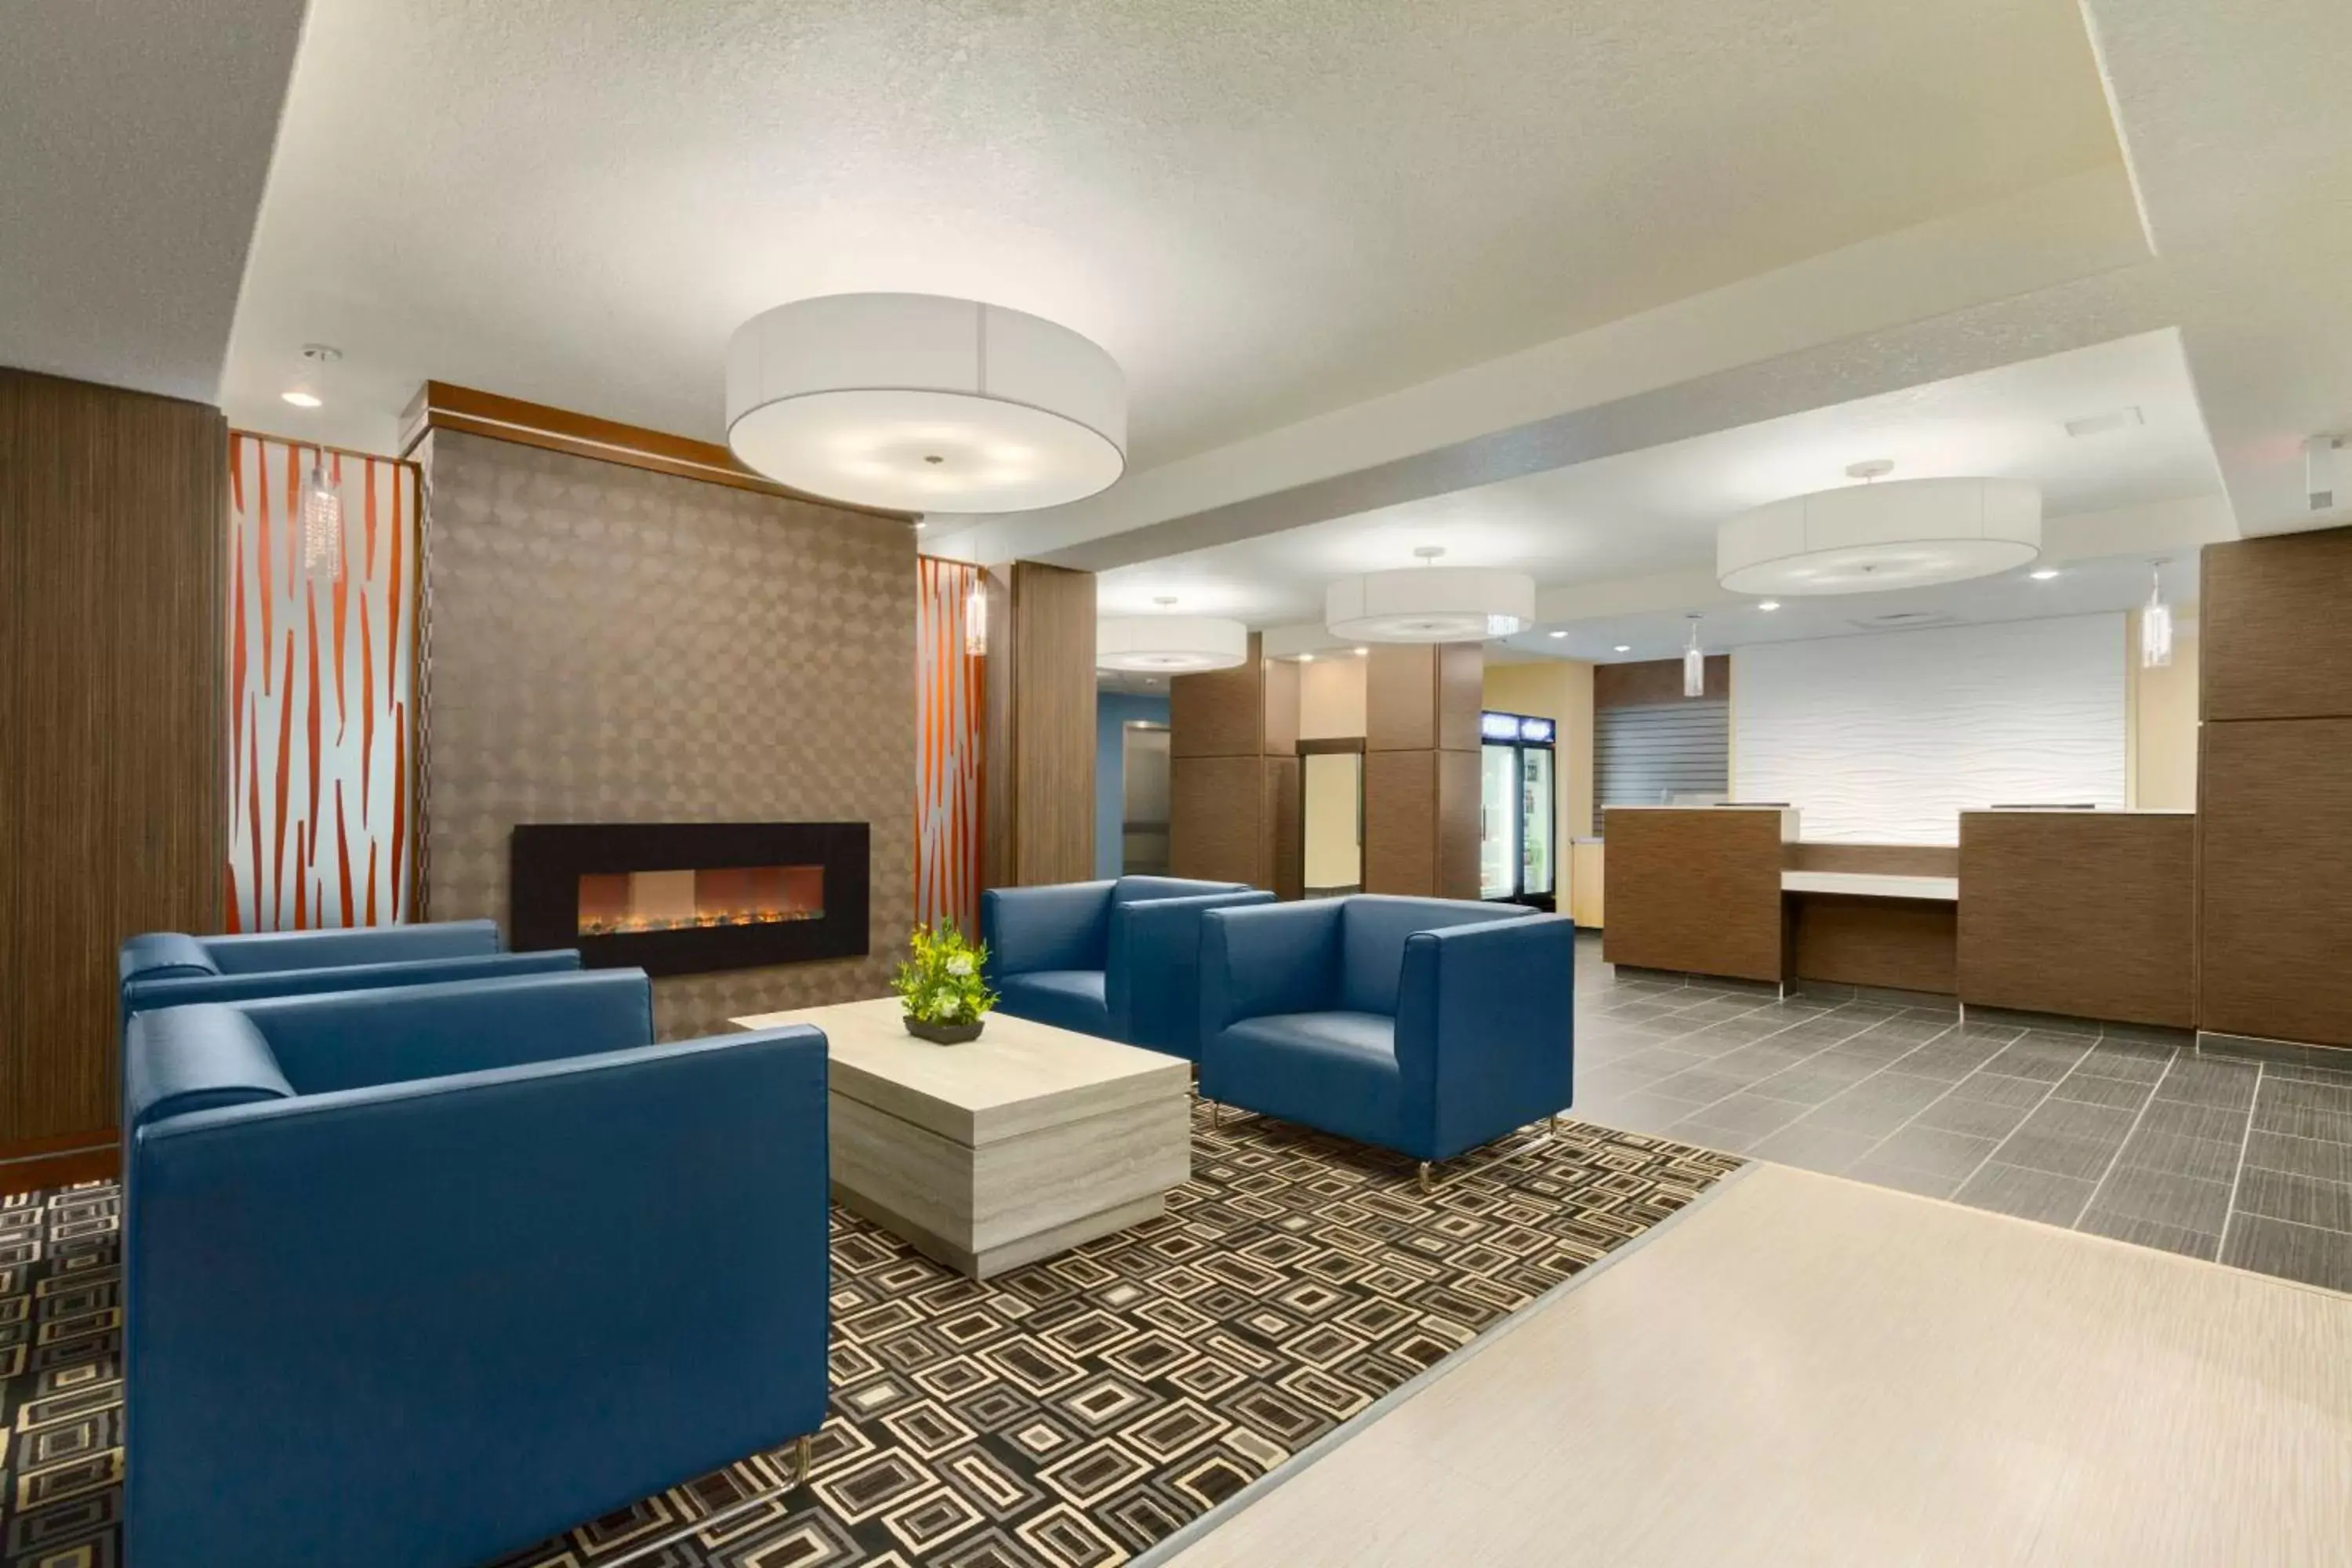 Lobby or reception, Lobby/Reception in Days Inn & Suites by Wyndham Yorkton